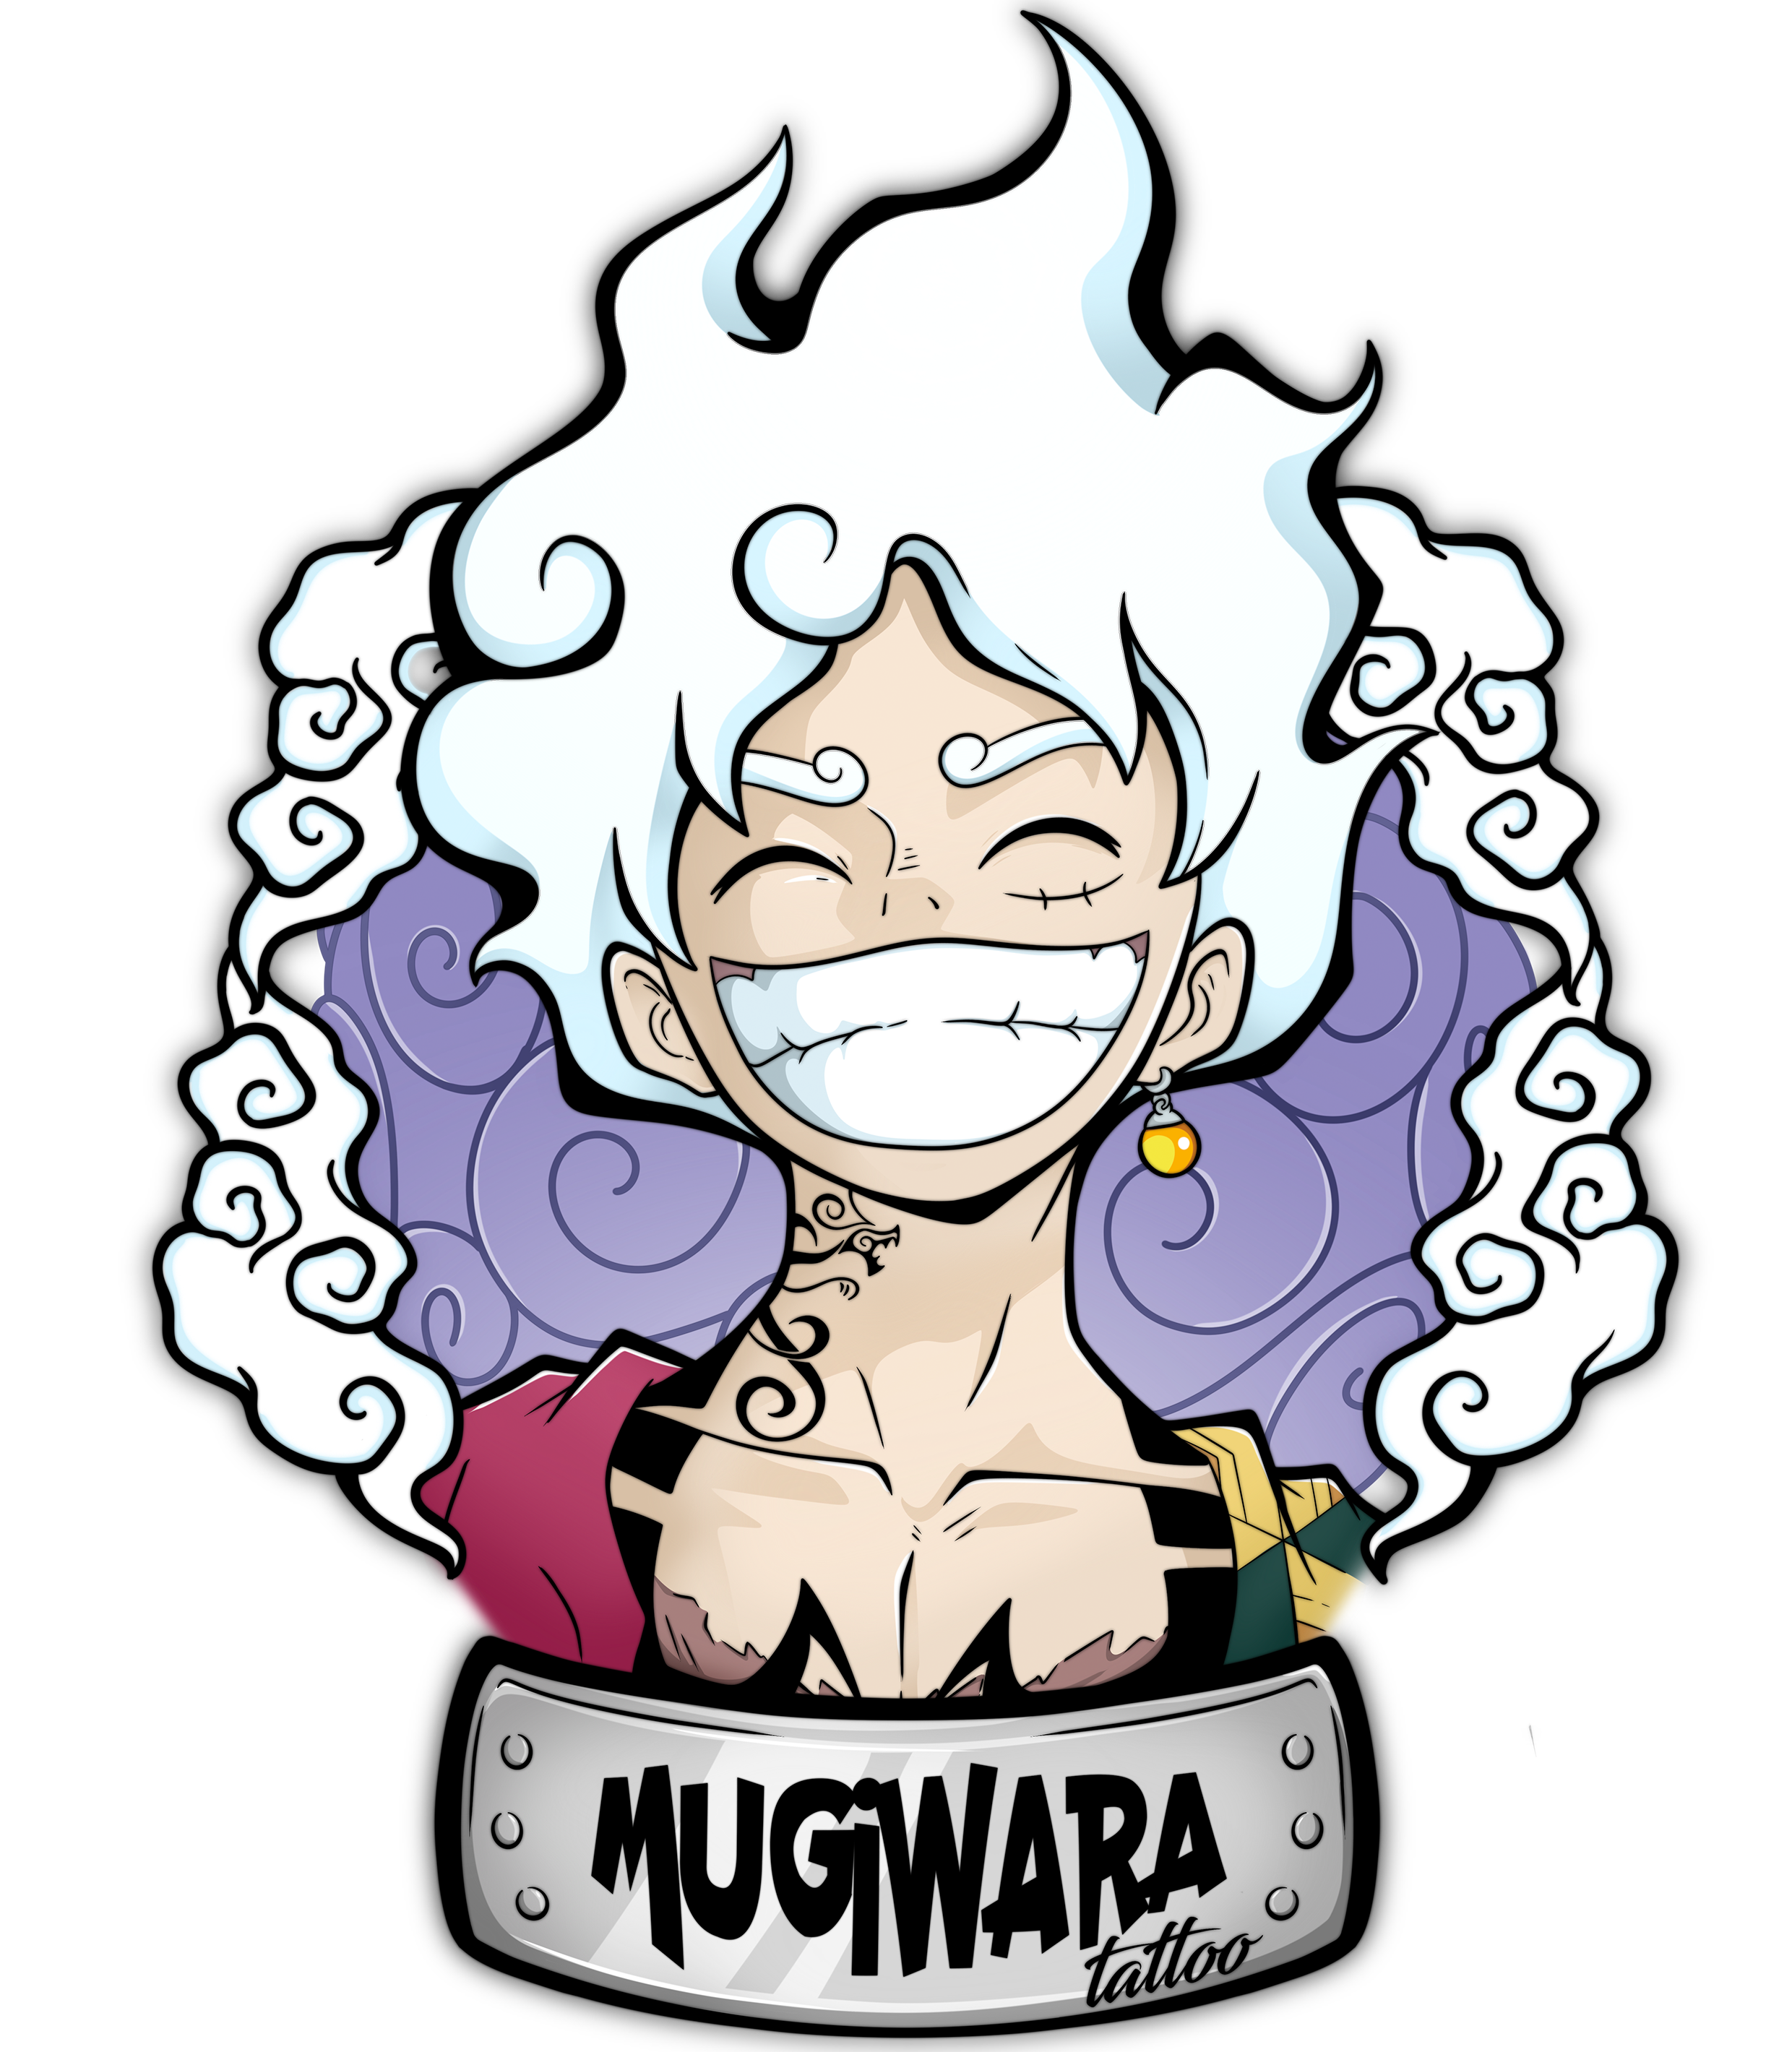 mugiwara